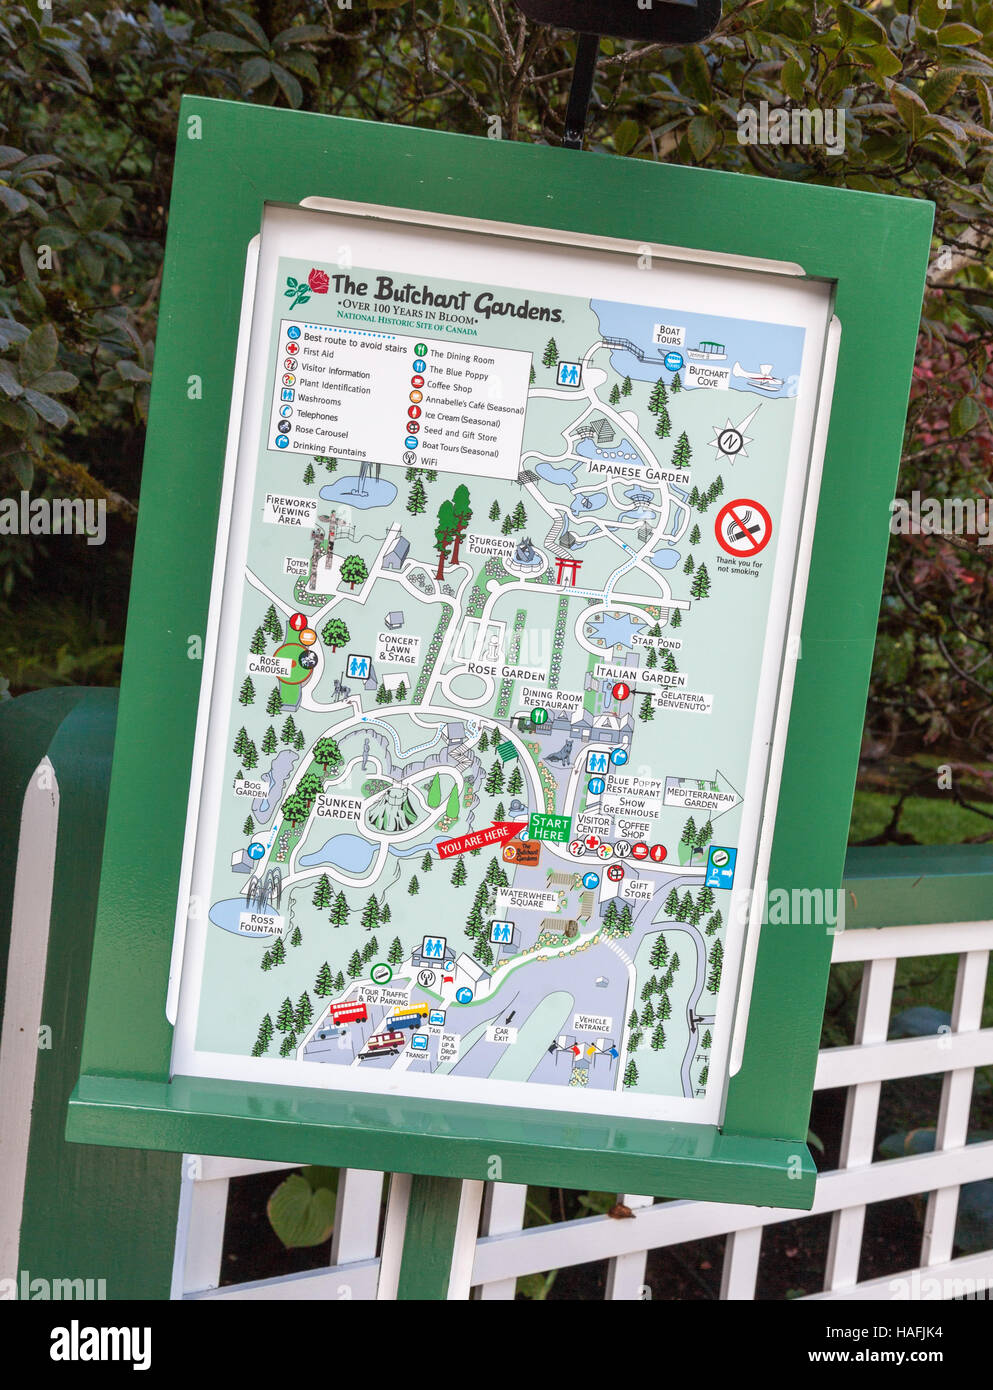 Une carte ou un plan de Butchart Gardens, Brentwood Bay, British Columbia, Canada, situé près de Victoria, sur l'île de Vancouver Banque D'Images